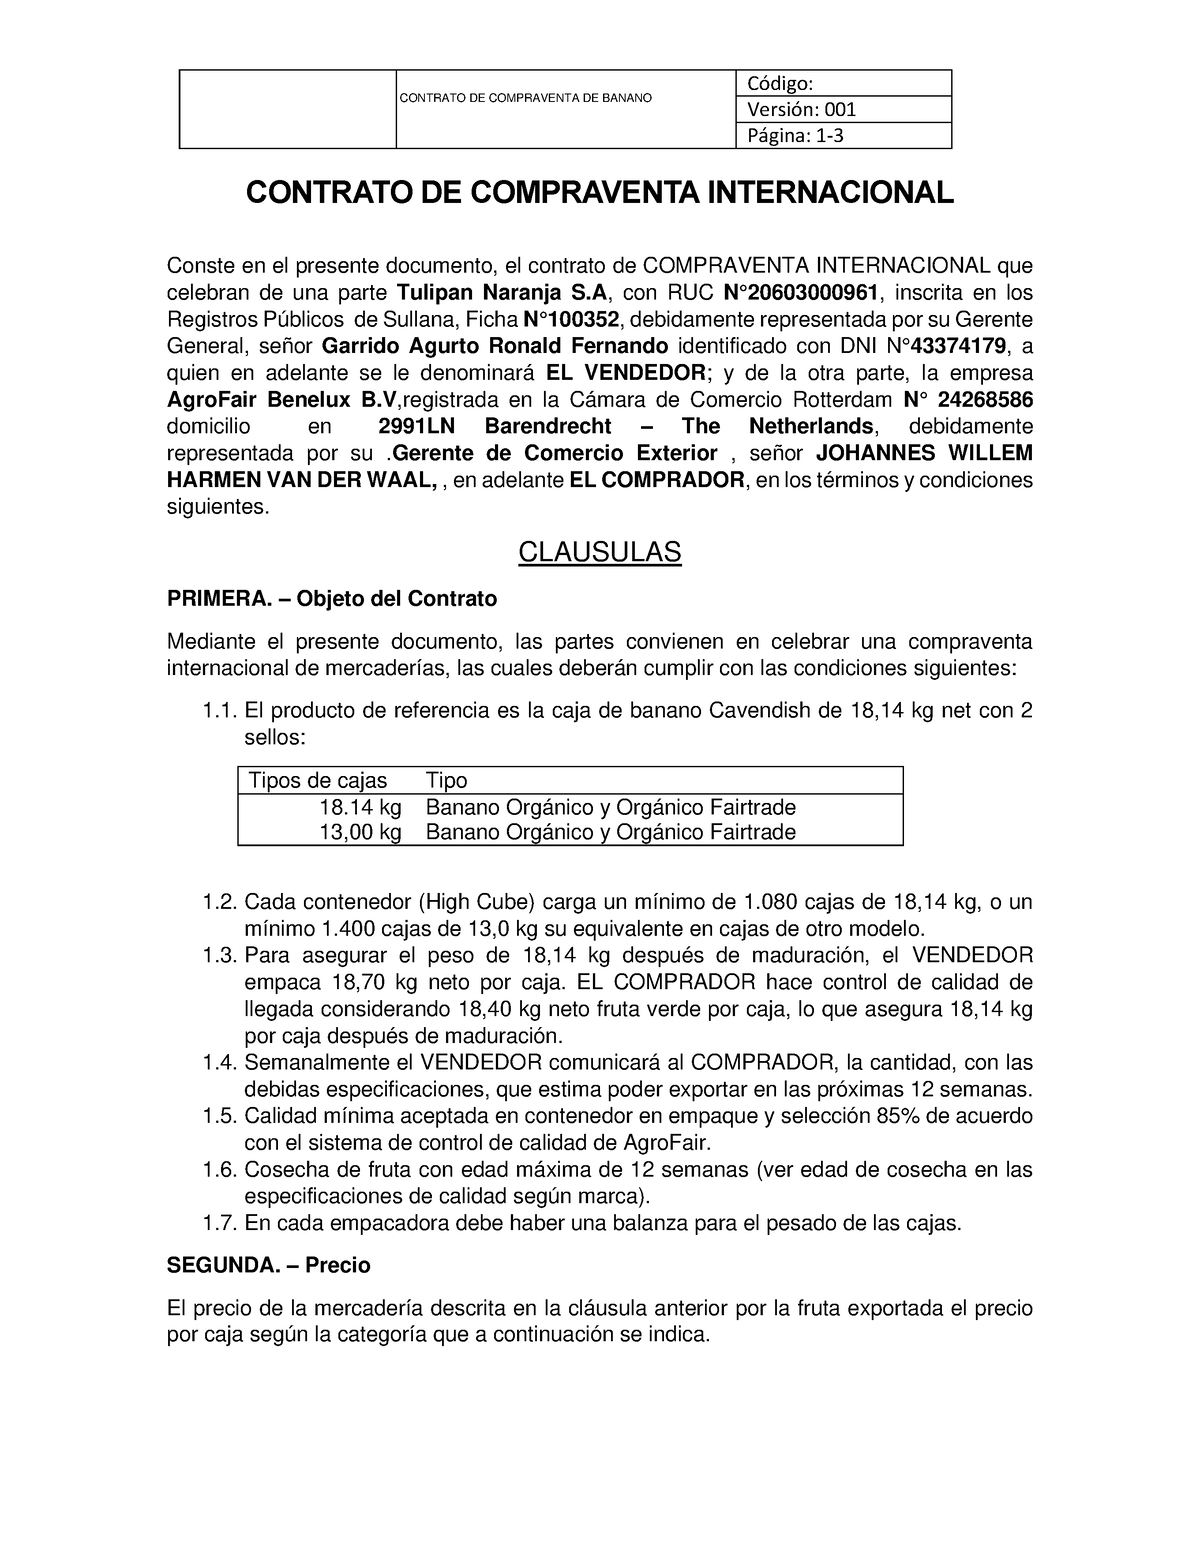 Contrato De Compraventa Internacional Contrato De Compraventa De Banano Código Versión 001 5985